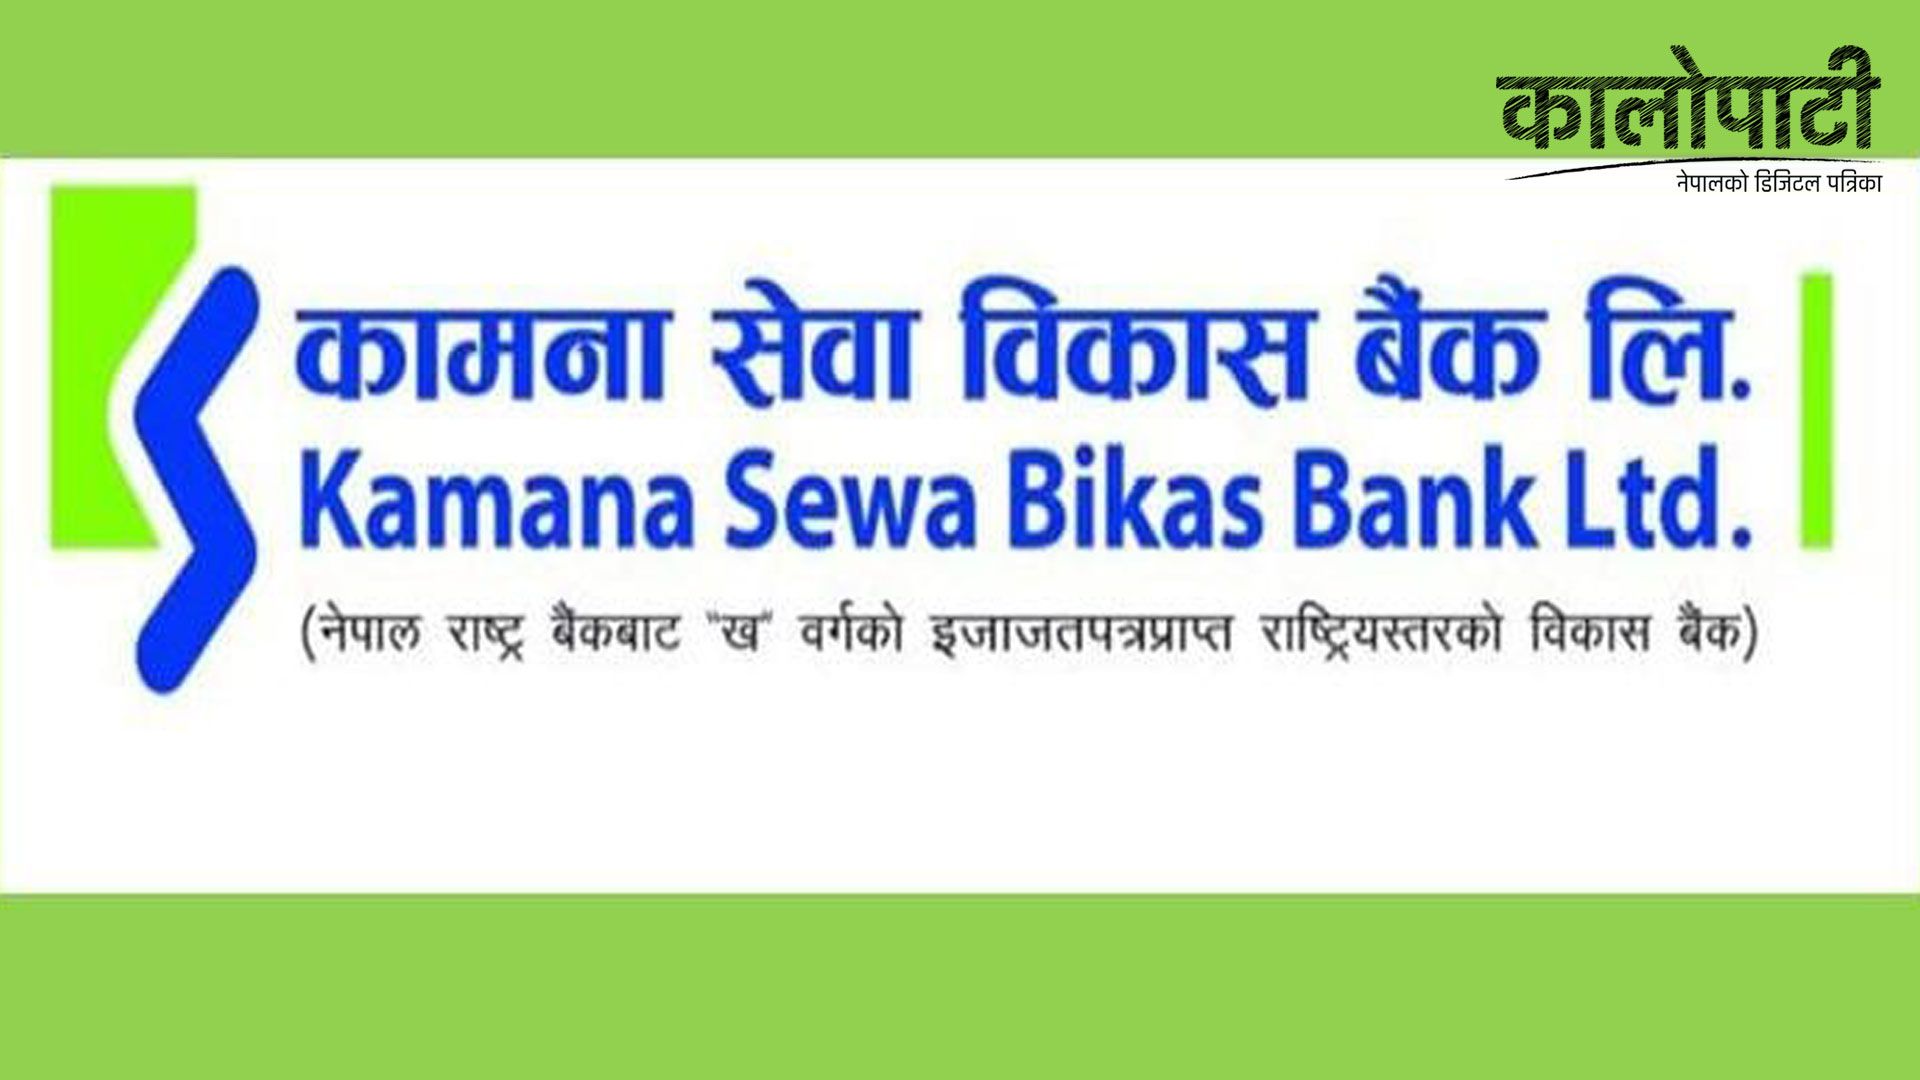 कामना सेवा विकास बैंकको आठौँ शाखारहित बैंकिङ सेवा सञ्चालन, अत्याधुनिक बैंकिङ सेवा पुर्याउने उद्देश्य